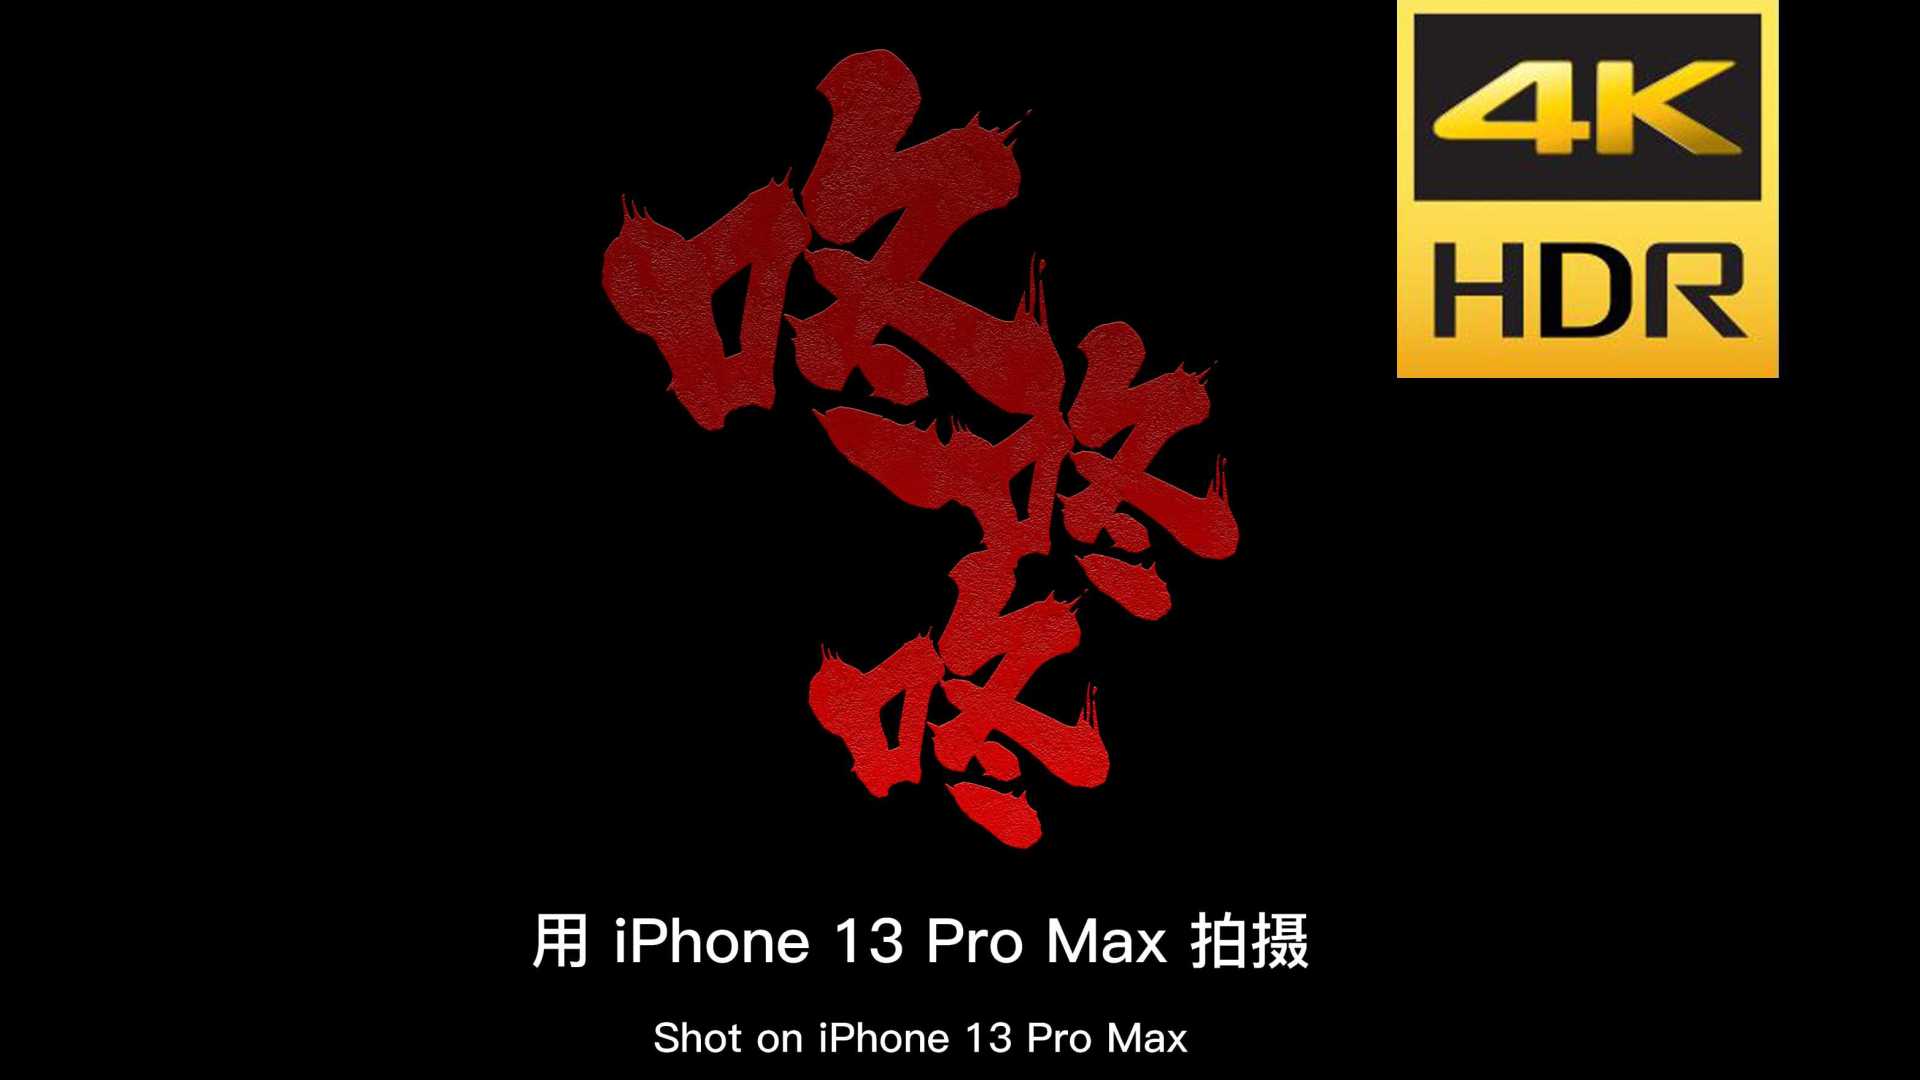 低成本惊悚短片《咚咚咚》——由iPhone 13 Pro Max拍摄